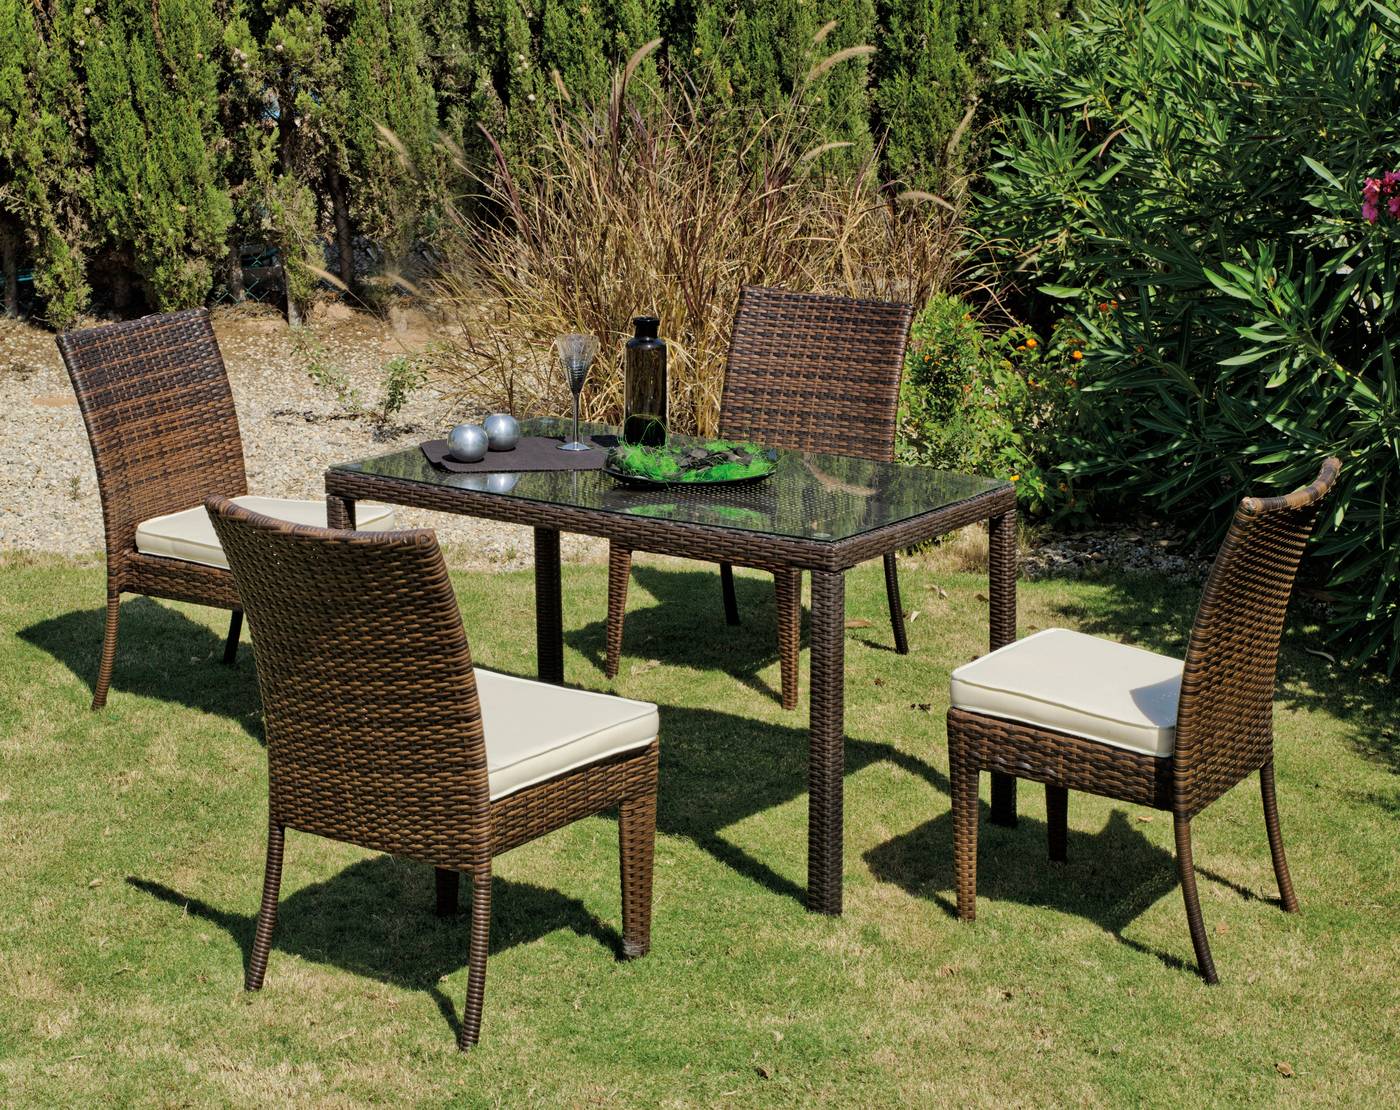 Cojunto ratán sintético color marrón: mesa de 110 cm. con tapa de cristal templado + 4 sillas apilables